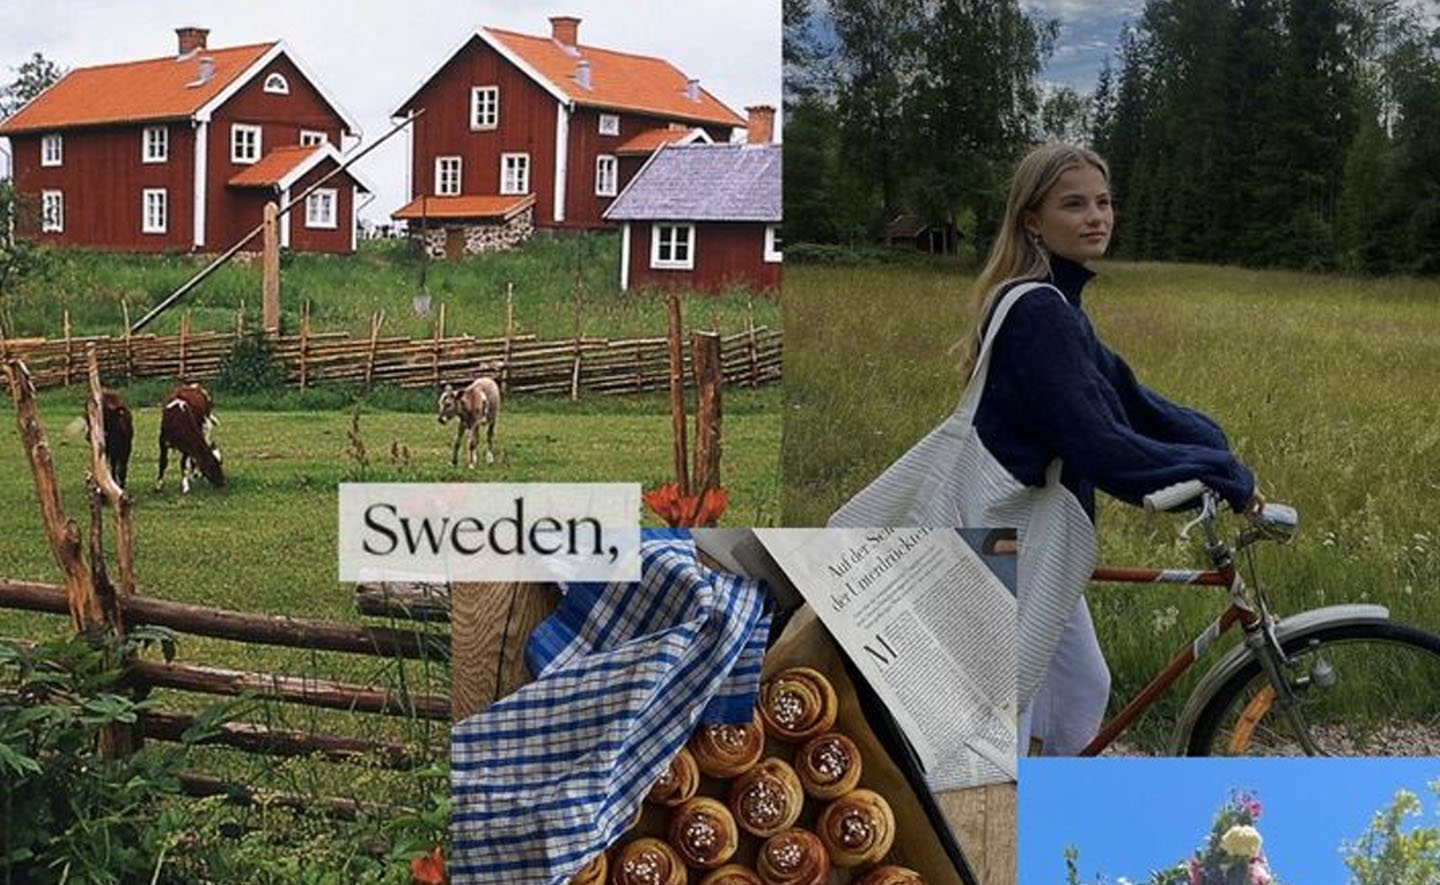 15 cuốn sách cho bạn trải nghiệm cuộc sống ở Thụy Điển